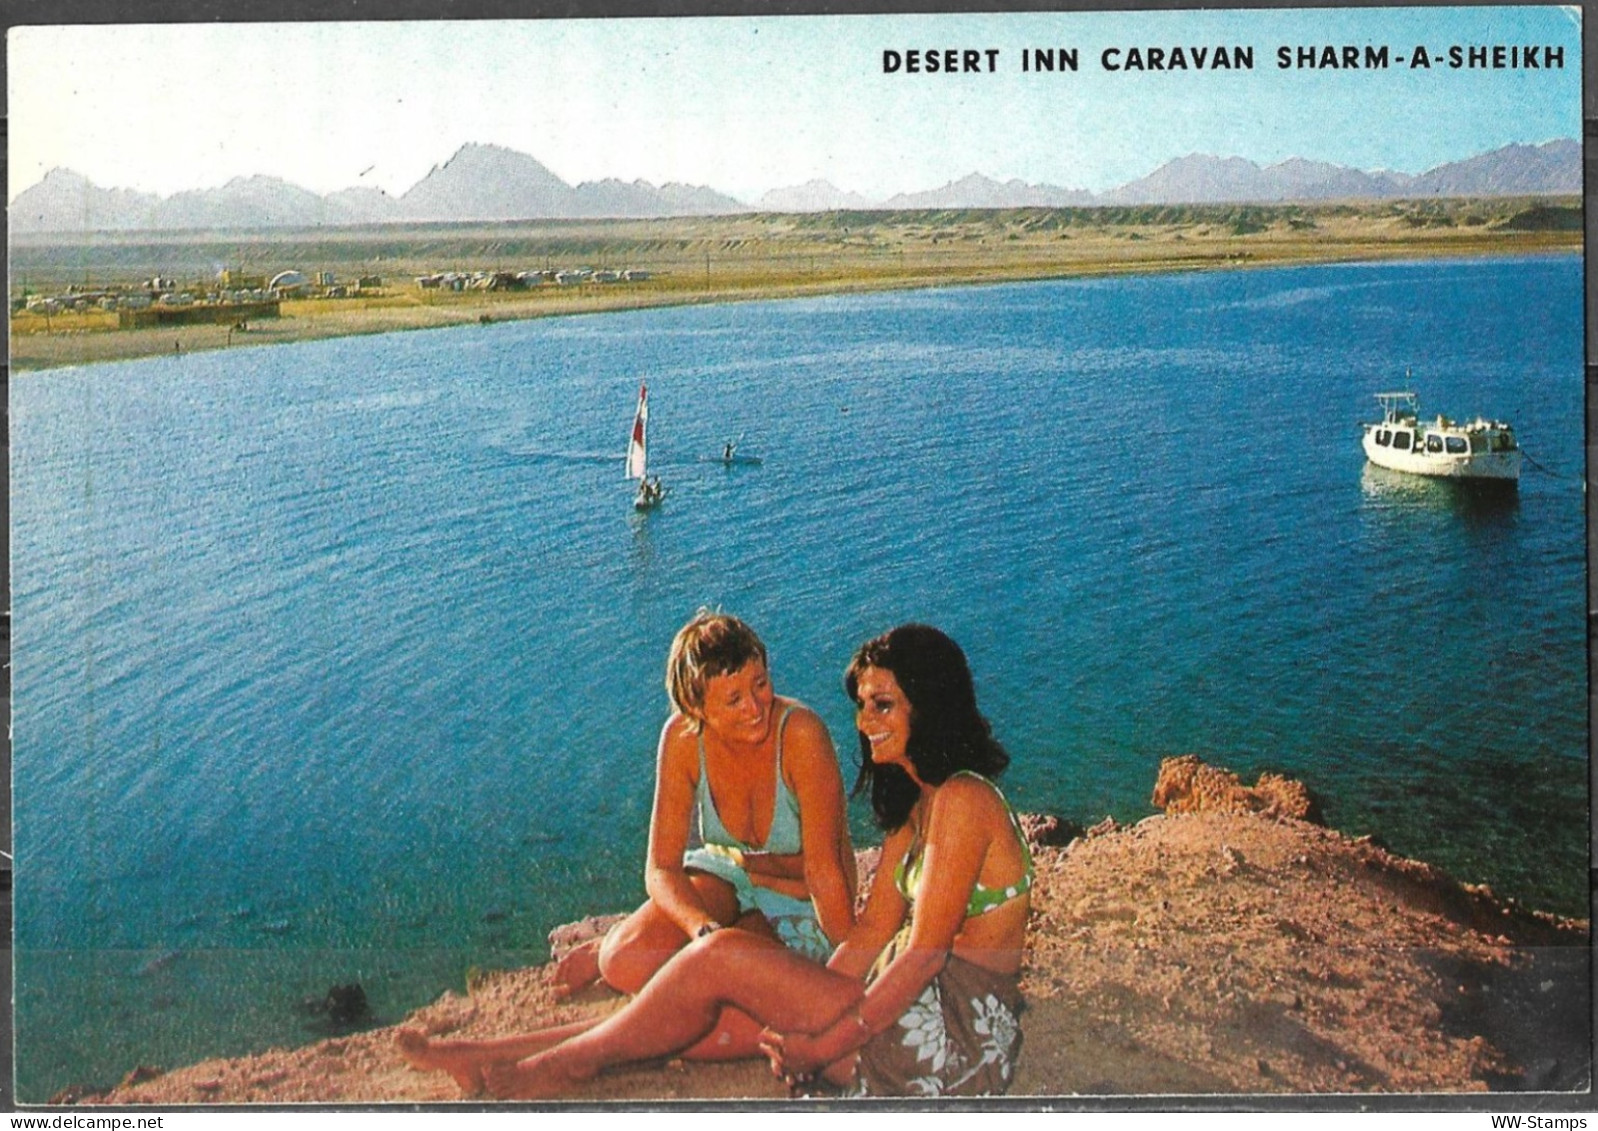 Postcard Israel Circa 1970 Desert Inn Caravan Sharm A Sheikh [ILT2075] - Sharm El Sheikh